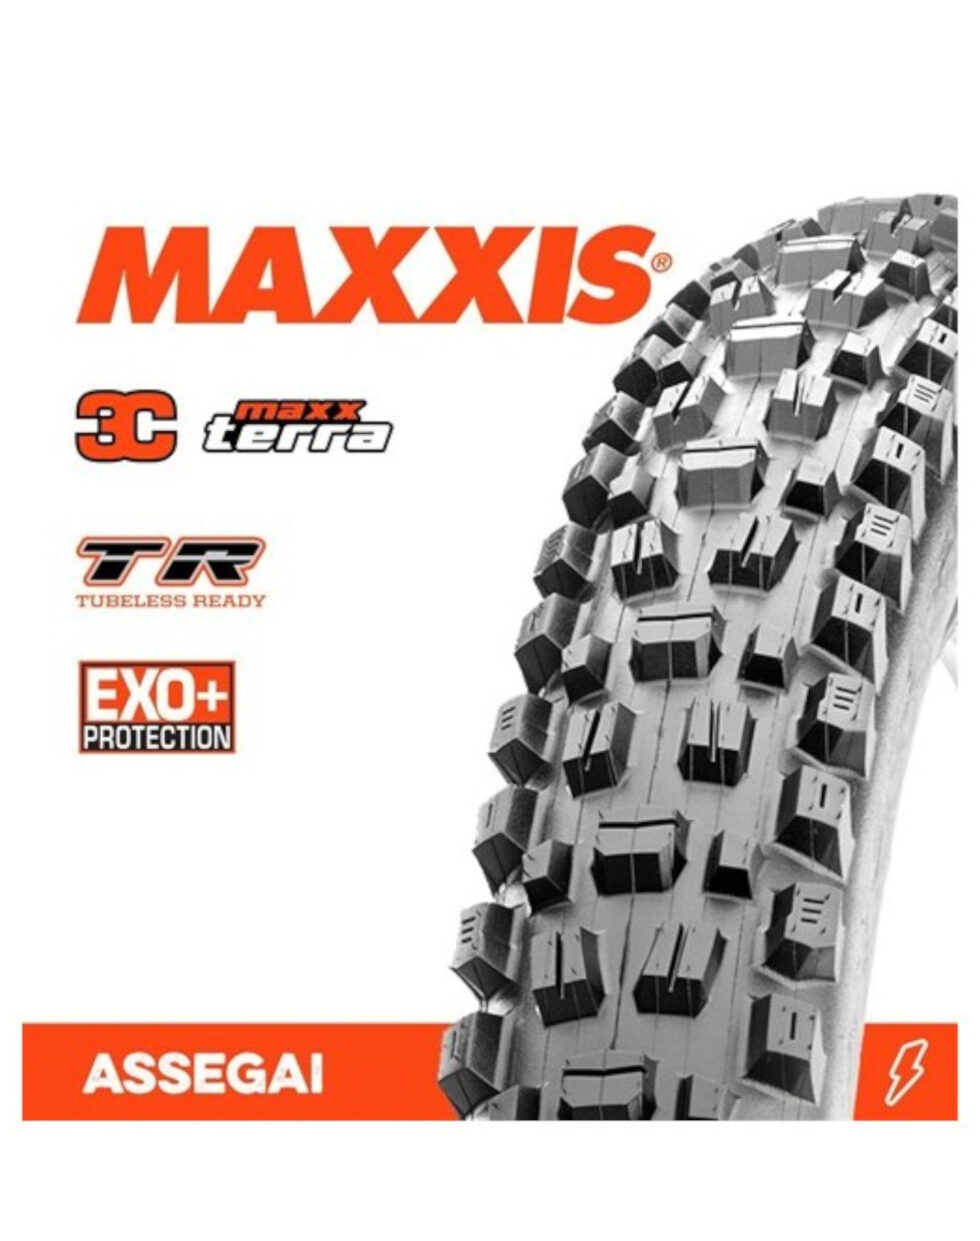 Copertone MAXXIS Assegai 29x2.60 WT 3C MaxxTerra TR EXO+ - Immagine 1